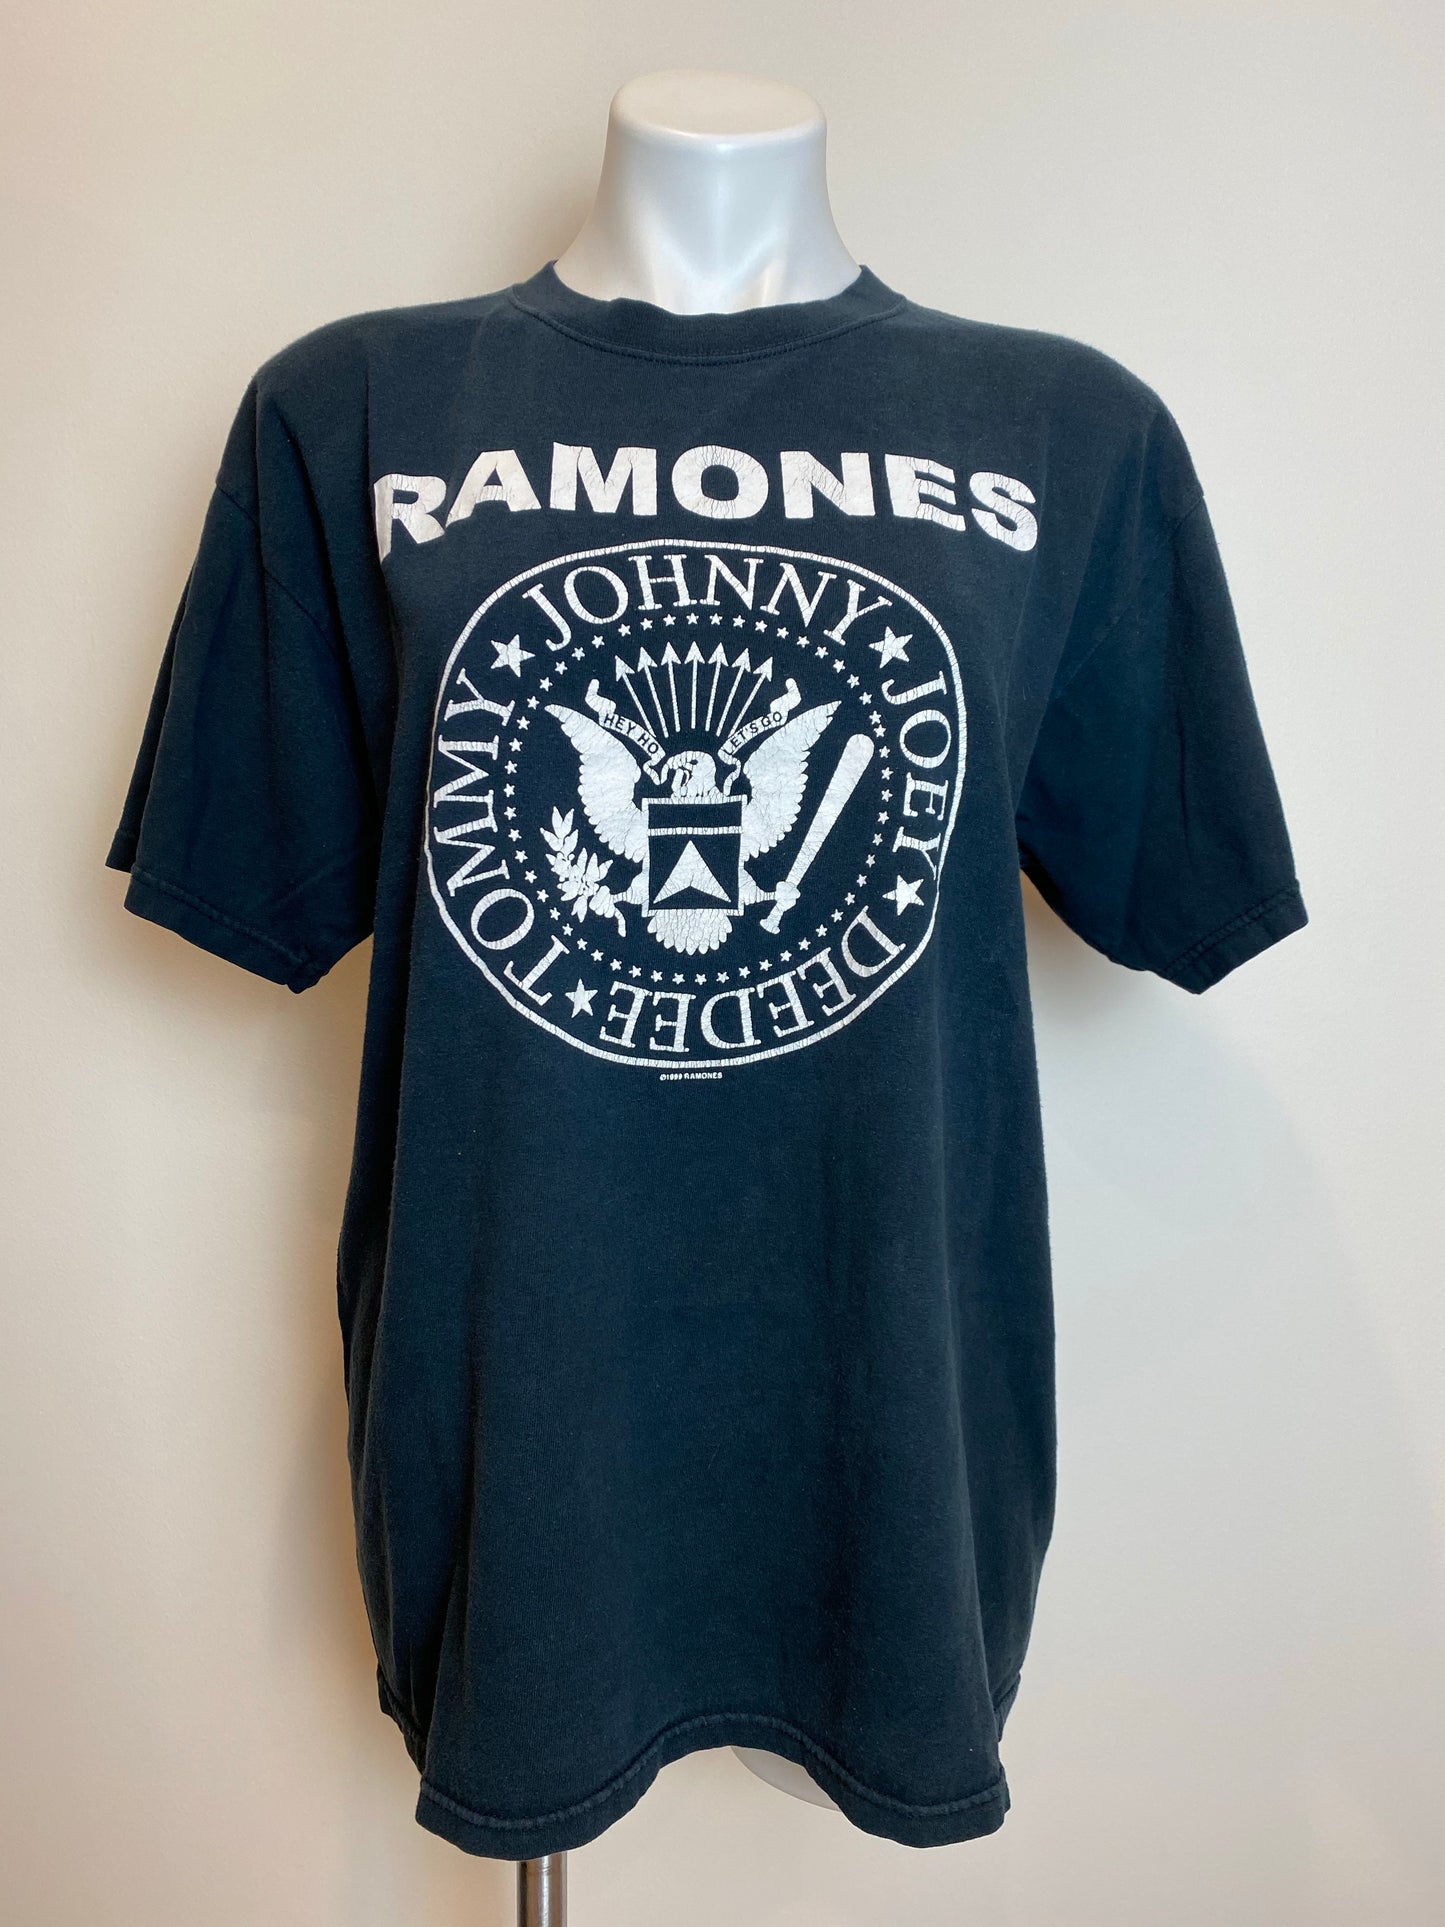 The Ramones Tee